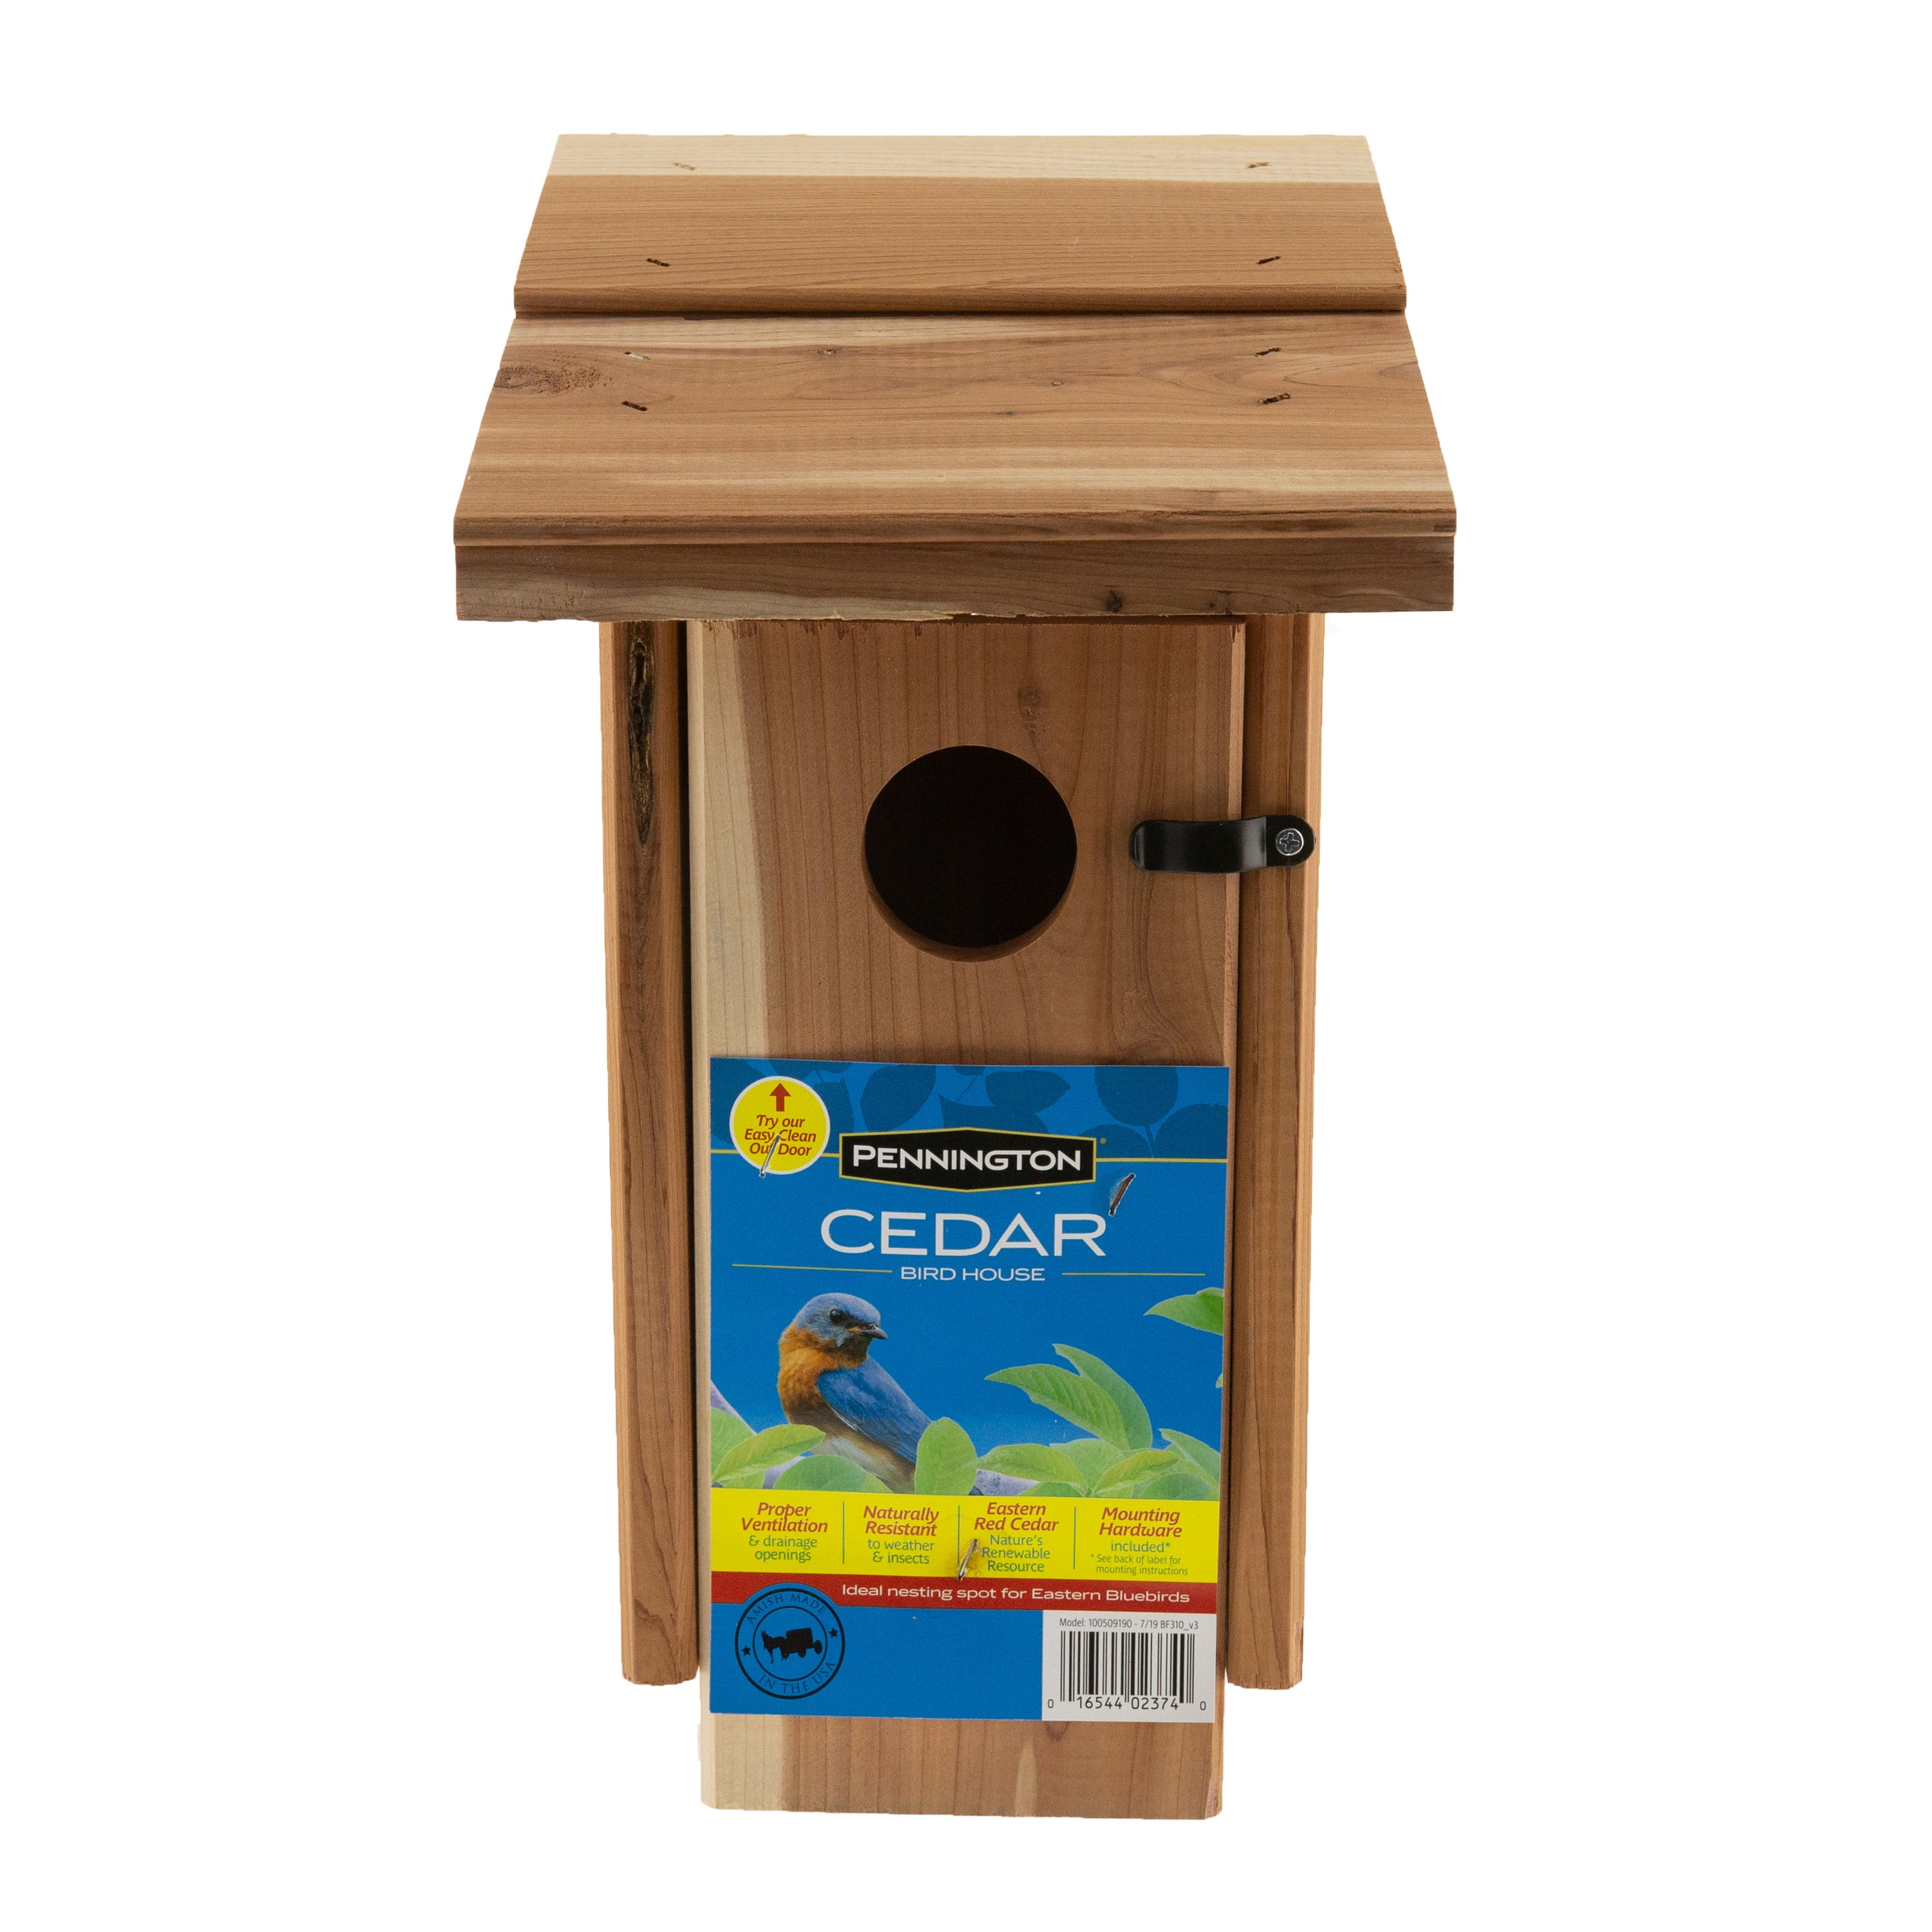 Cedar Predator Guard for Birdhouse Bird House Bluebird Chickadee Finch 4 Pack!!! 